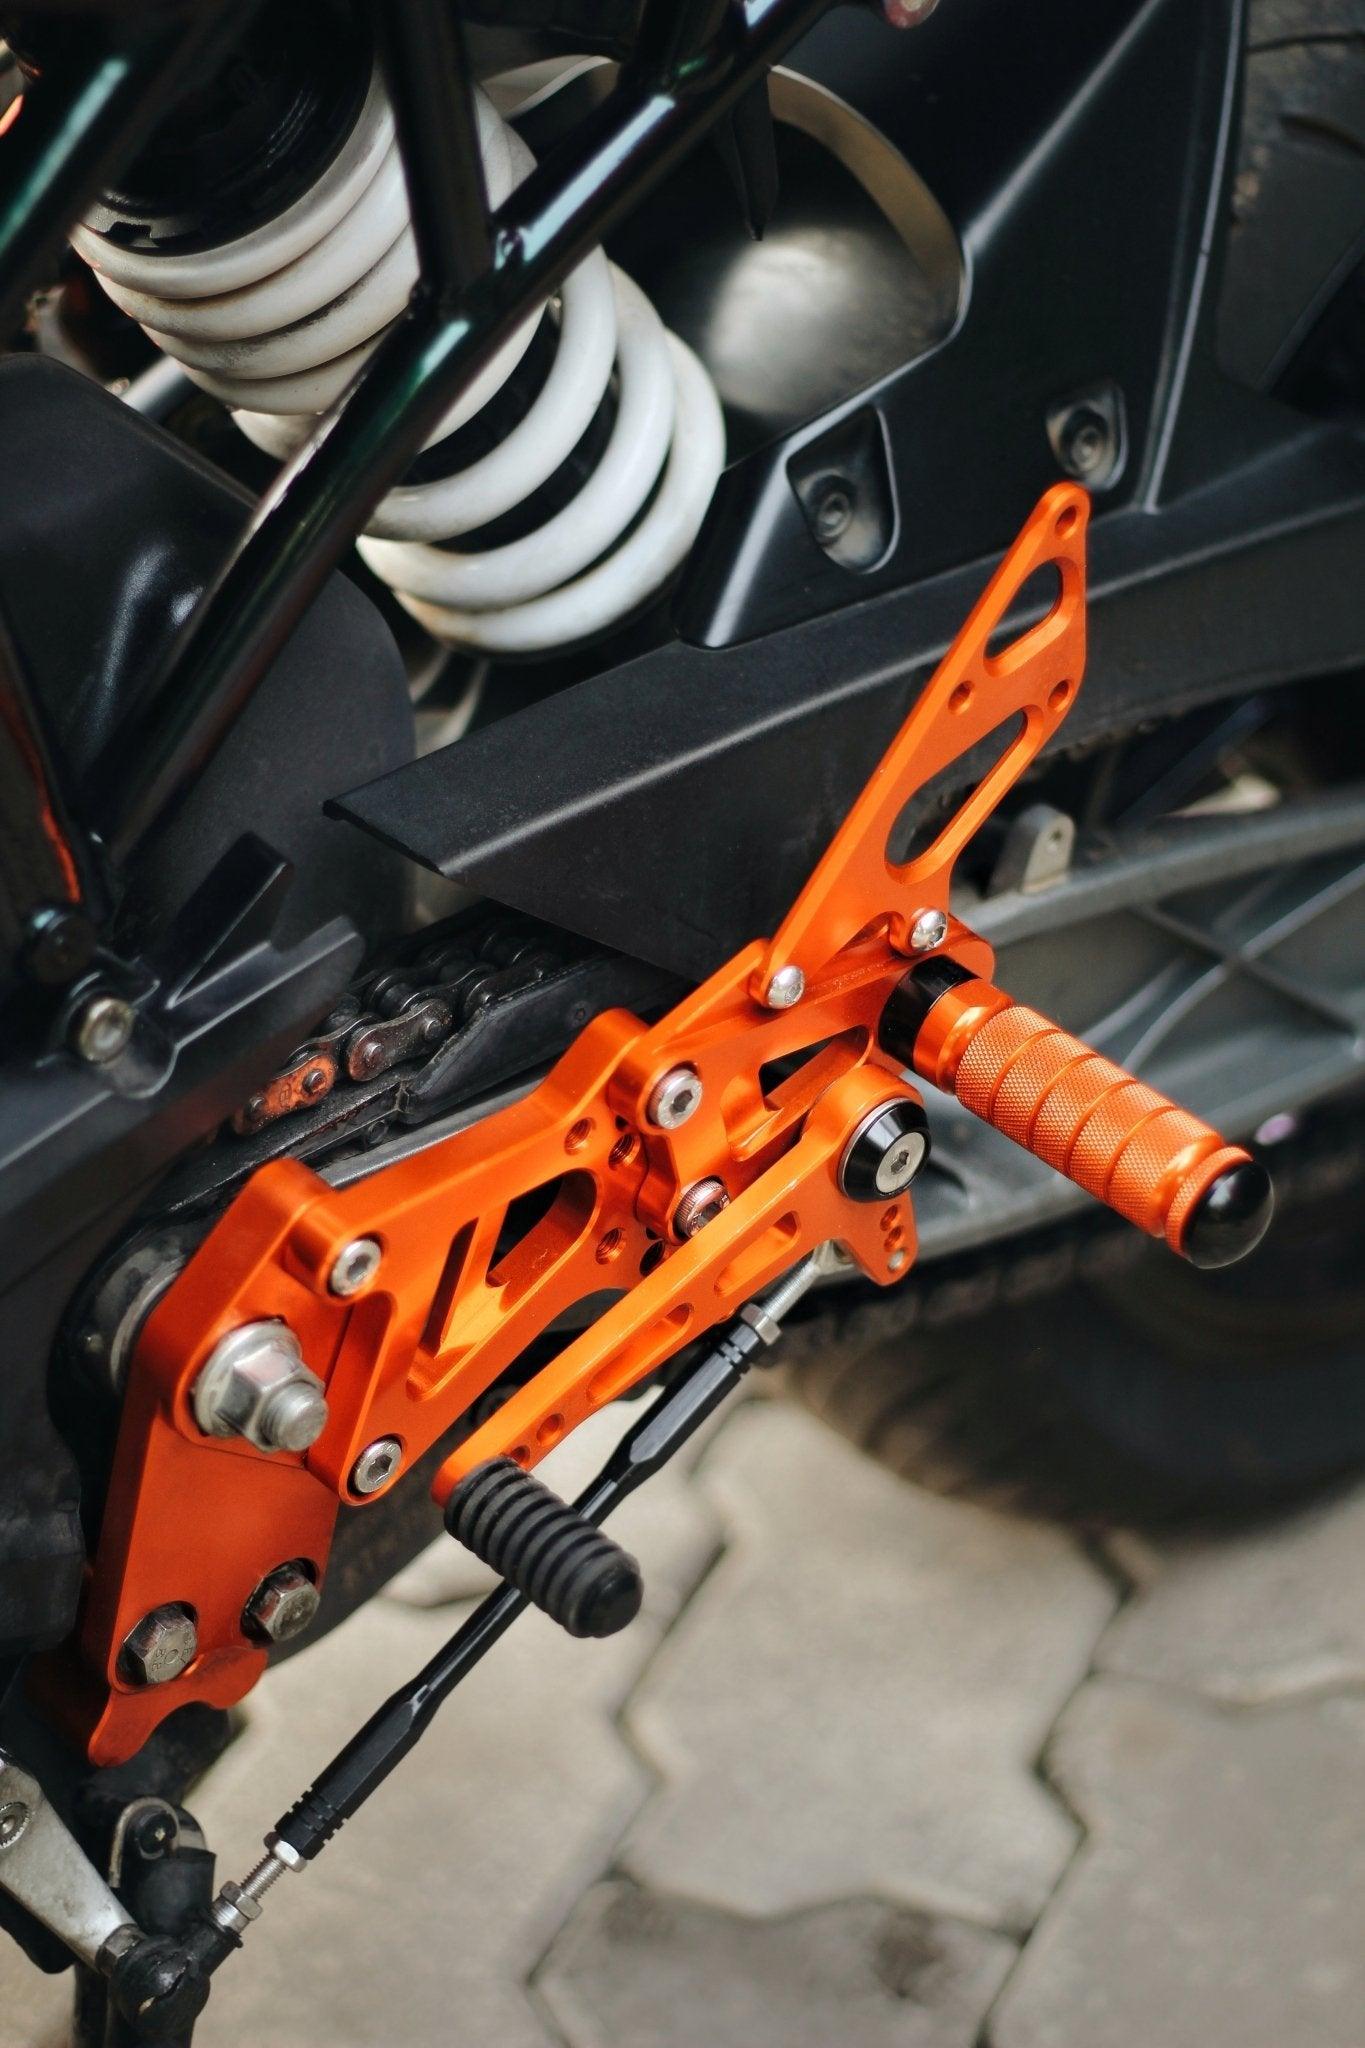 66Bhp CNC Adjustable Rearset Footrest Rear Sets for KTM 125 Duke - Moto Modz